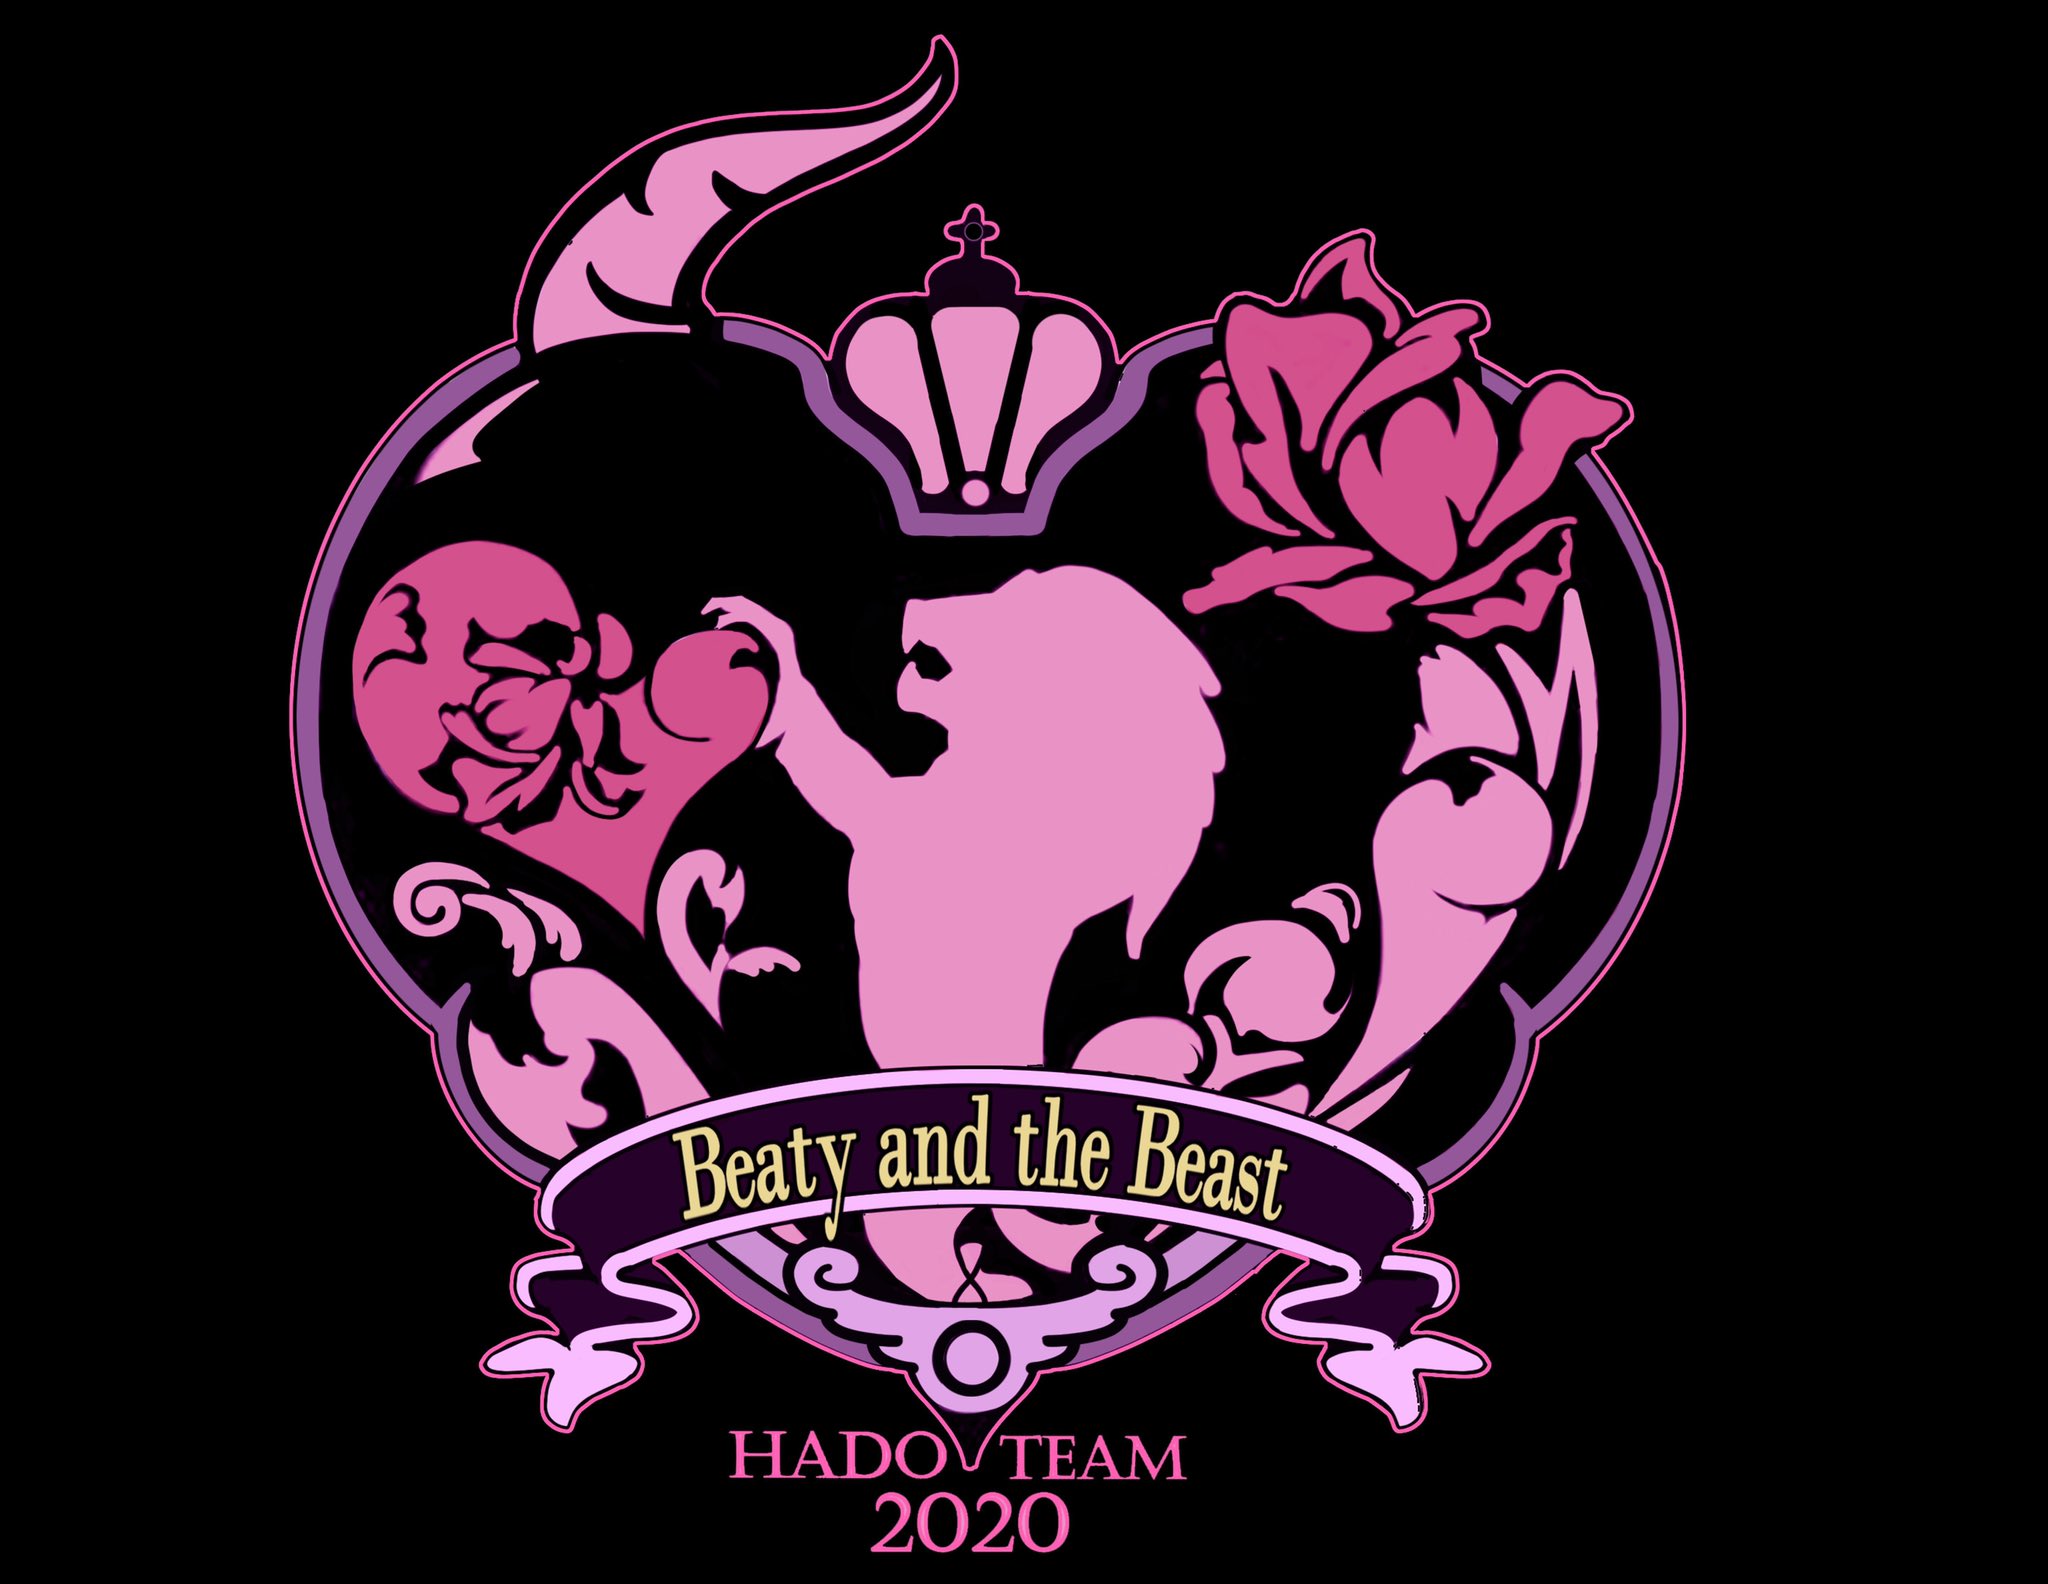 ジェミー Hadoチーム 美女と野獣 のロゴデザインやっと描けた 次の大会に間に合わせたい Hado ロゴデザイン T Co Y9hxihavqm Twitter